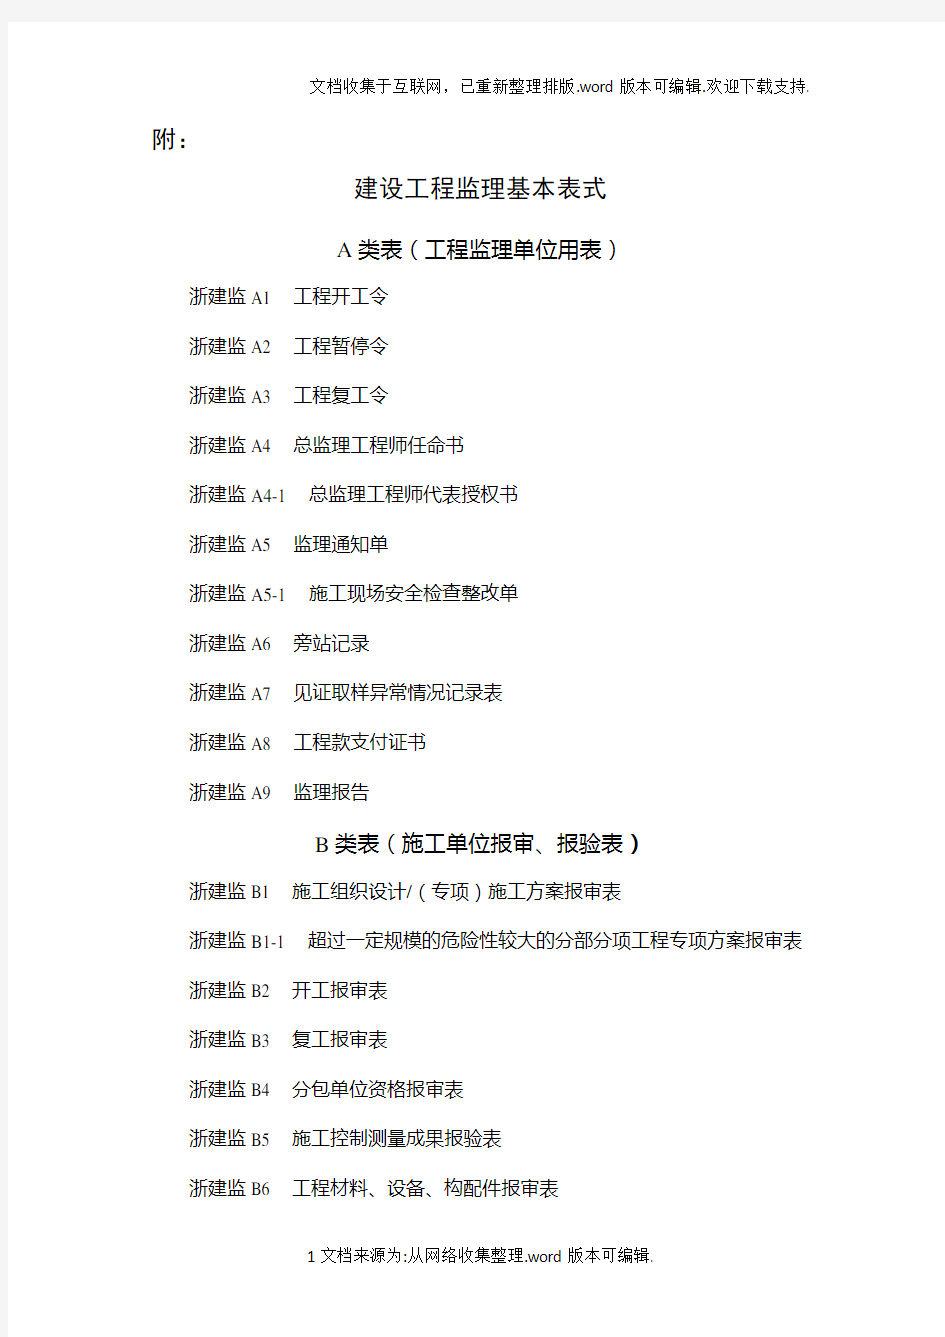 新版浙江省工程建设标准表格